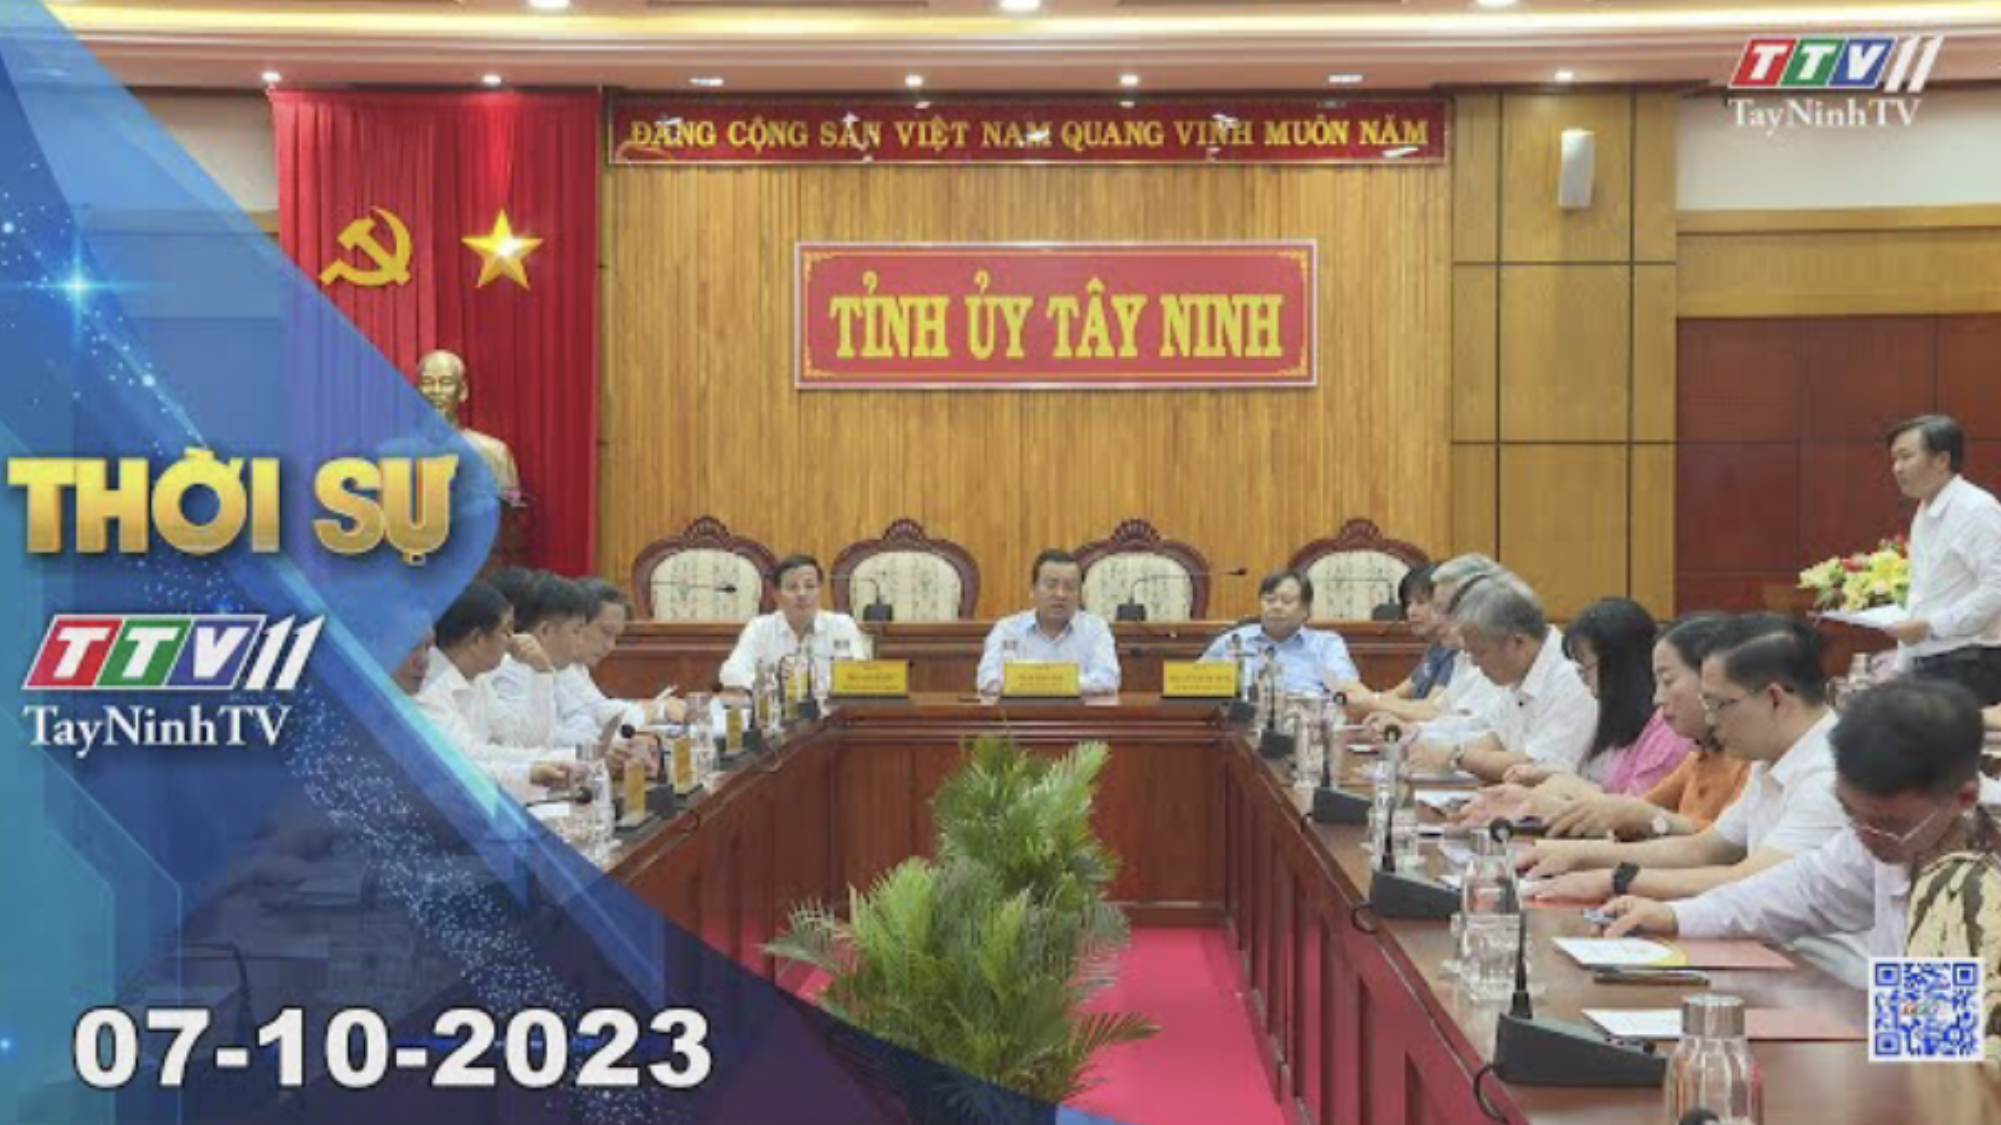 Thời sự Tây Ninh 07-10-2023 | Tin tức hôm nay | TayNinhTV